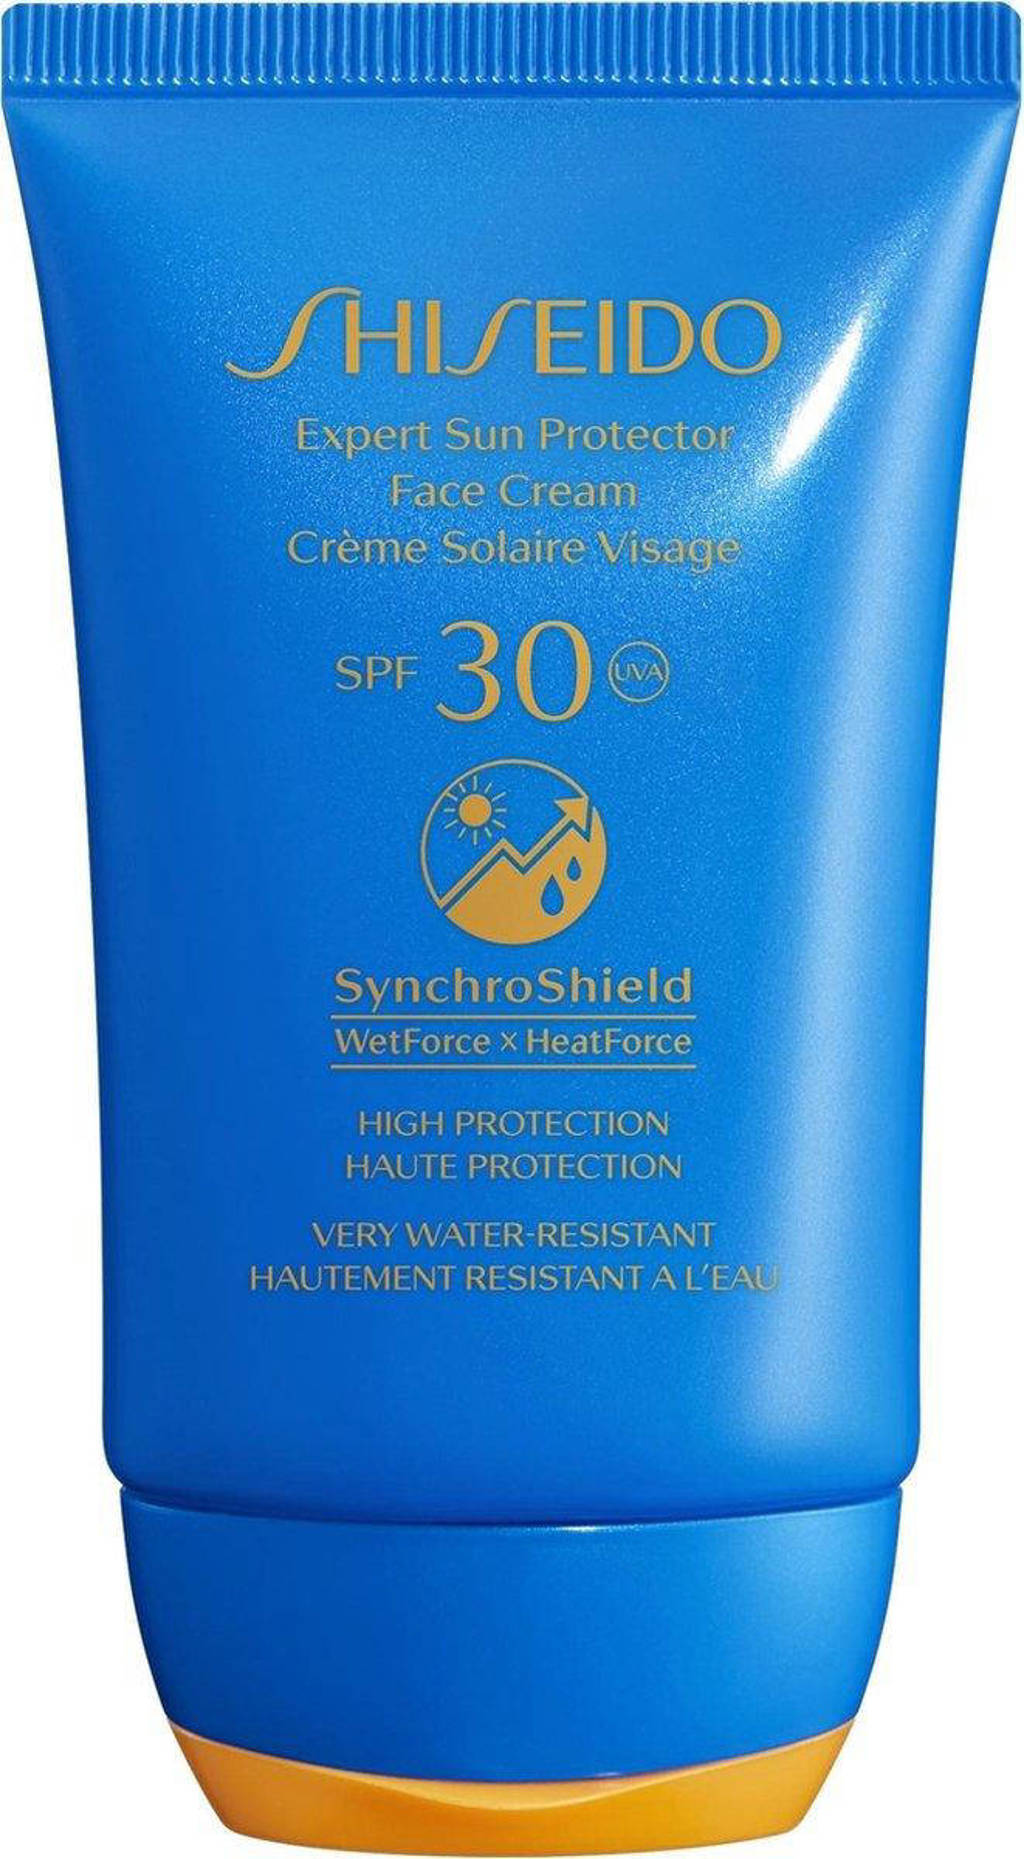 Shiseido Expert Sun Protector Face Cream SPF 30+ - 50 ml